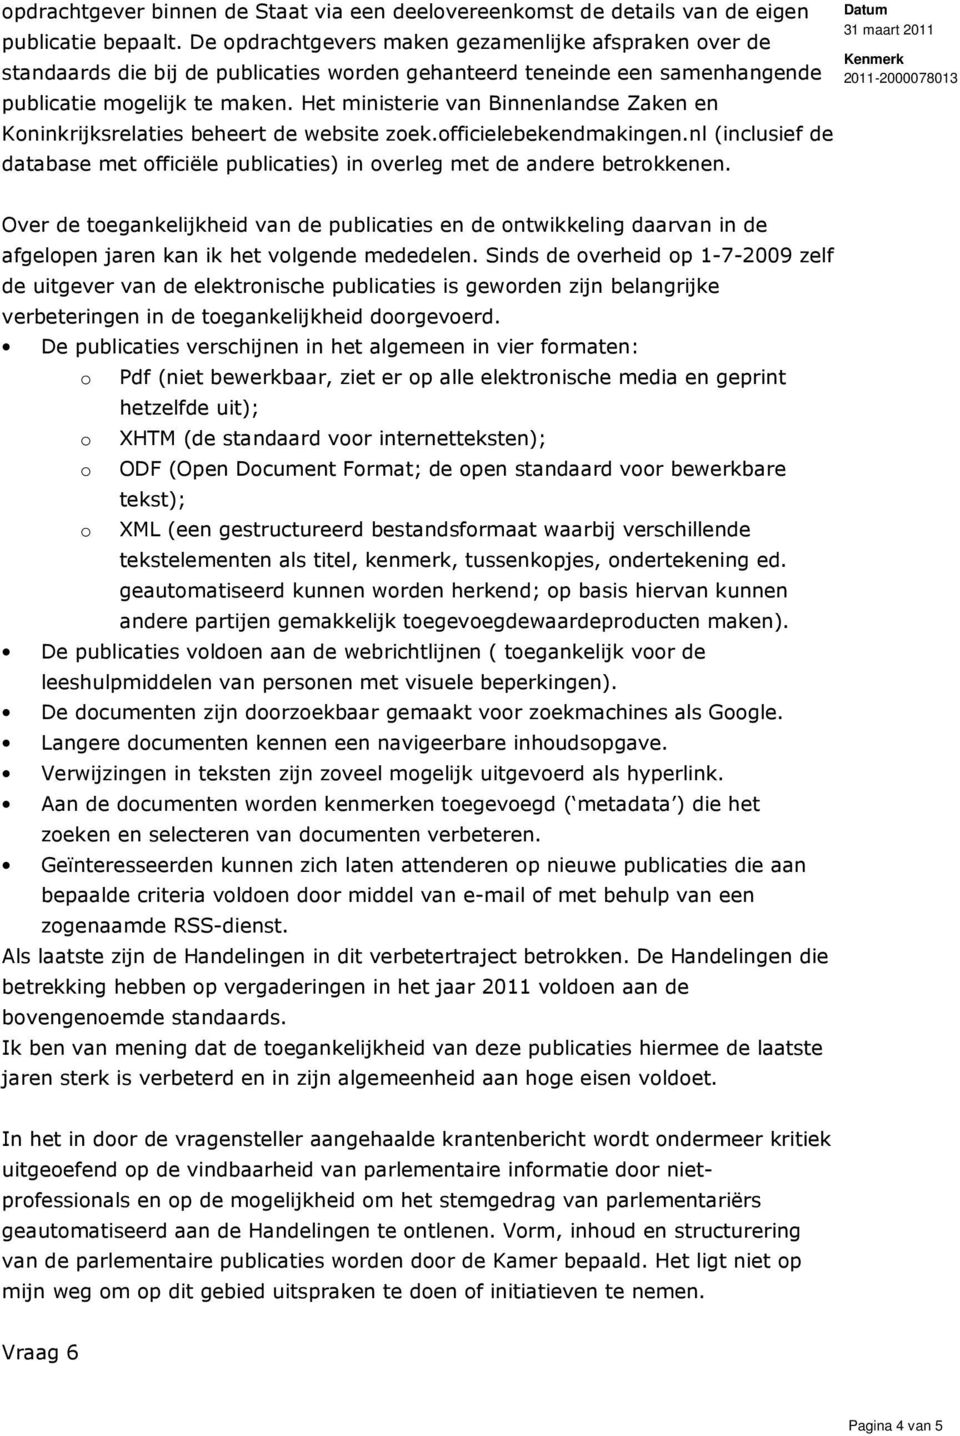 Het ministerie van Binnenlandse Zaken en Koninkrijksrelaties beheert de website zoek.officielebekendmakingen.nl (inclusief de database met officiële publicaties) in overleg met de andere betrokkenen.